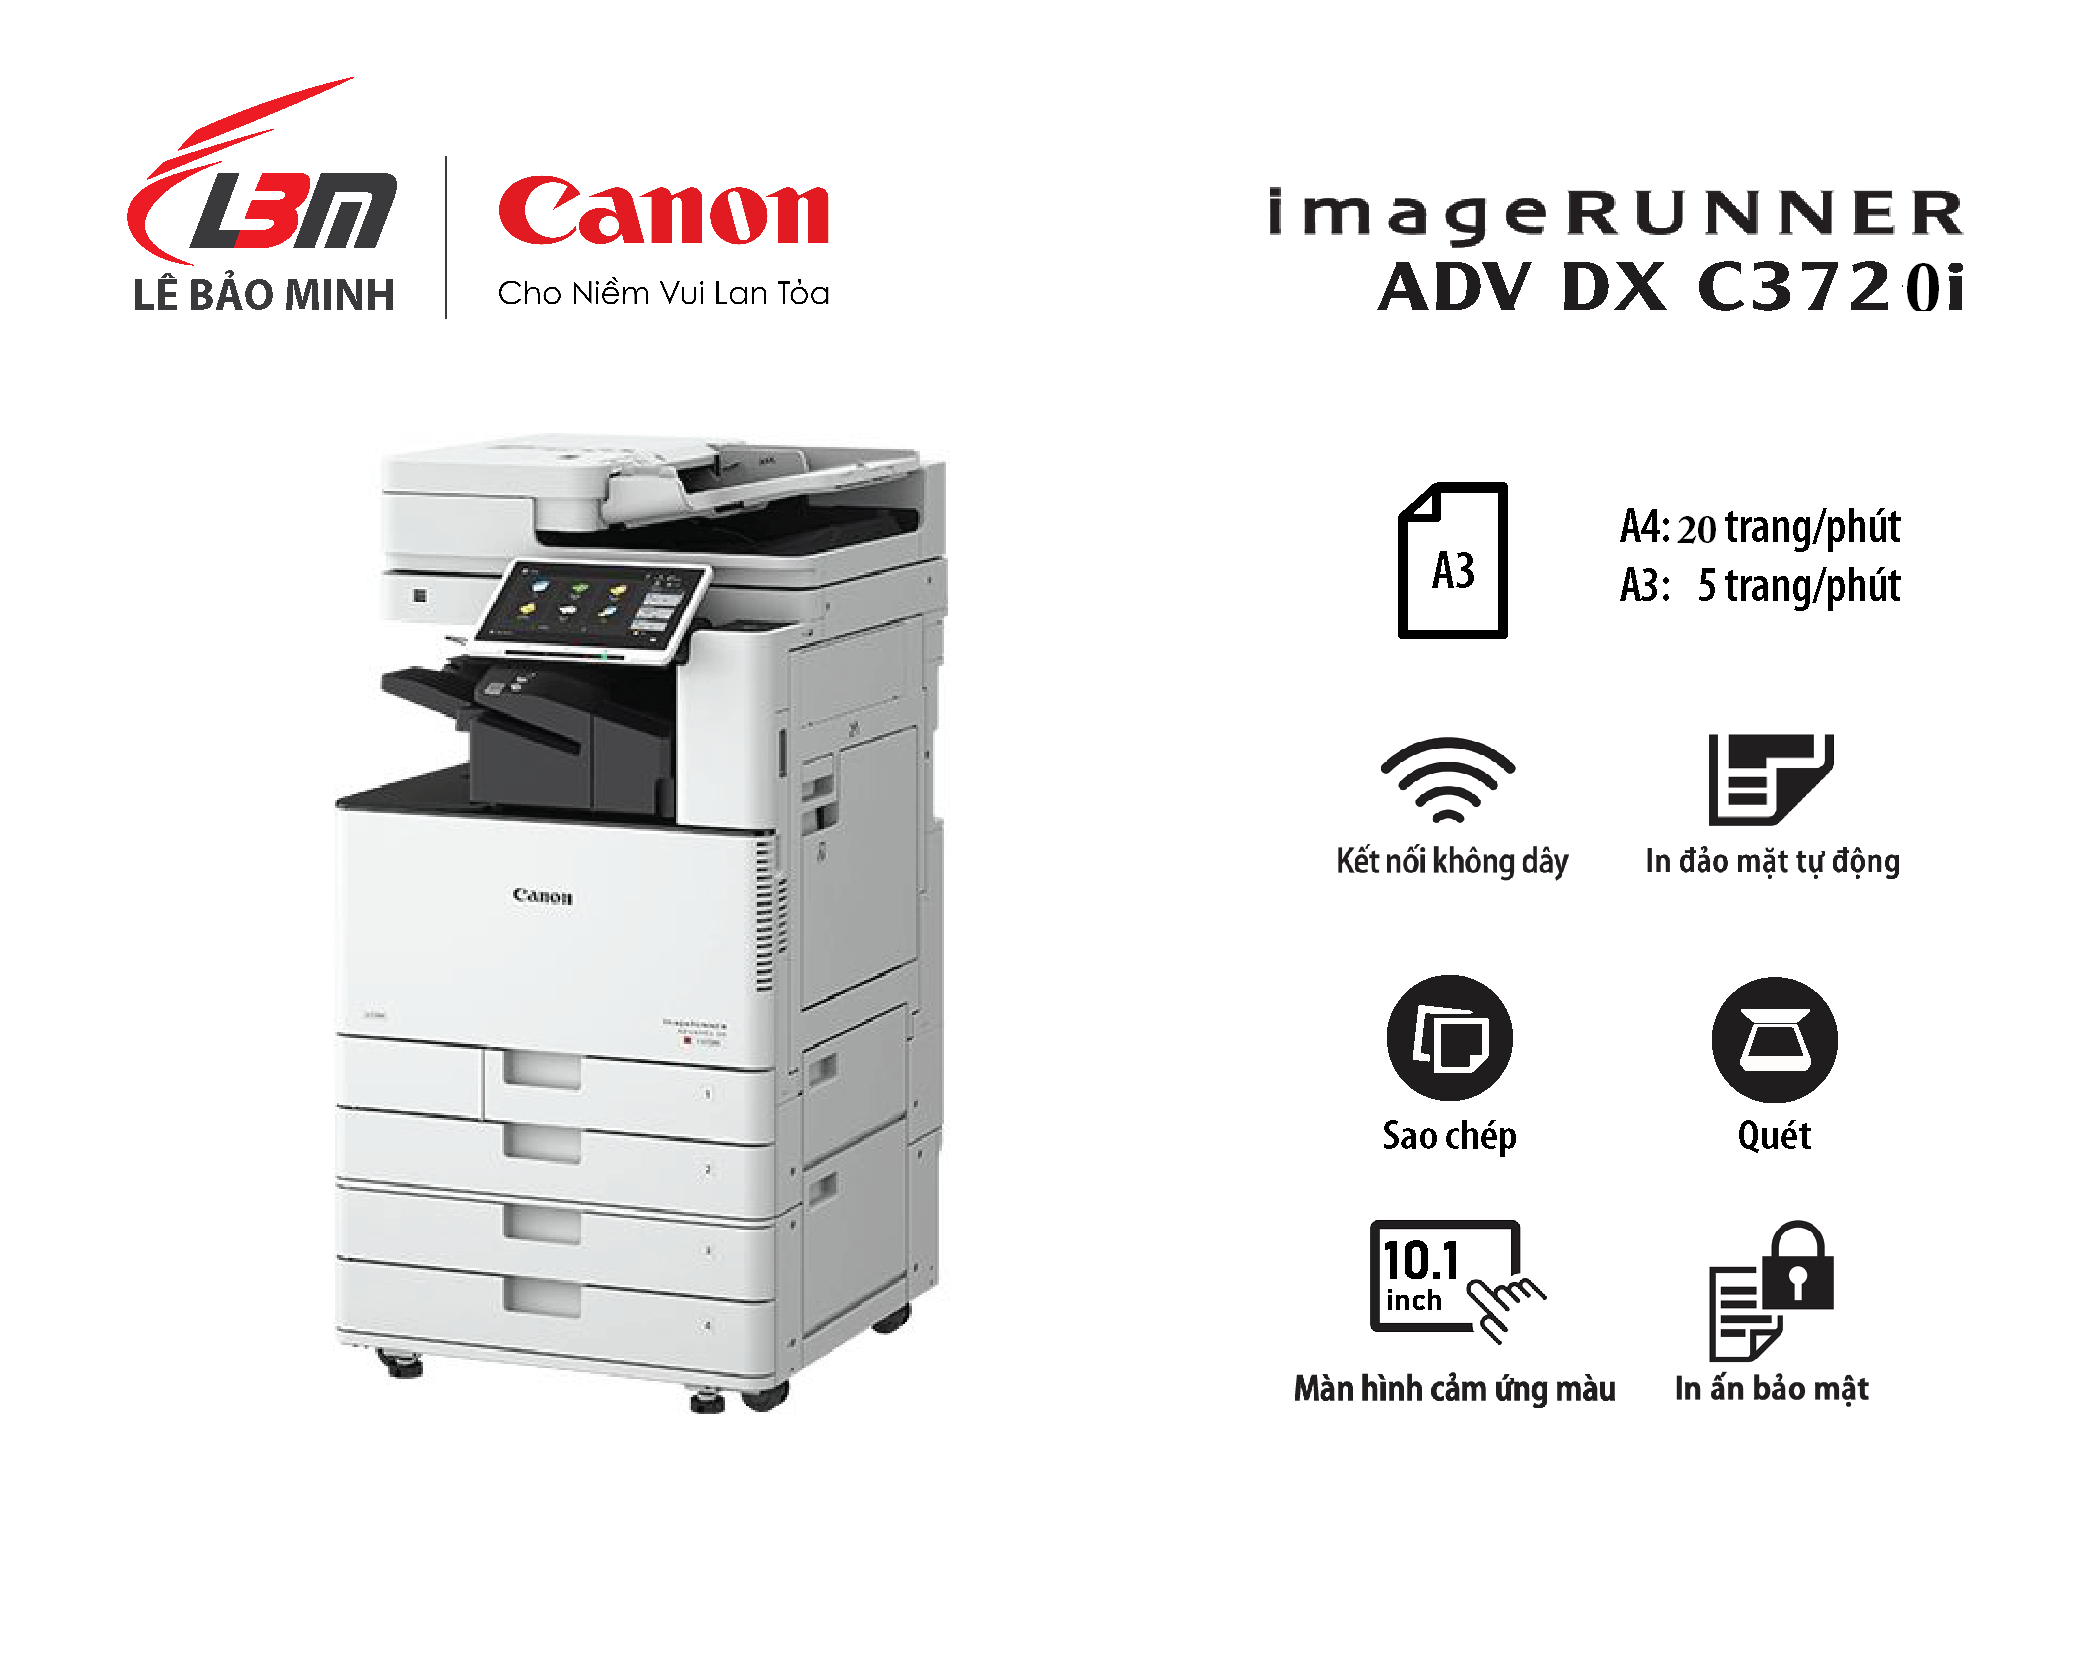 Photocopy iR-ADV DX C3720i